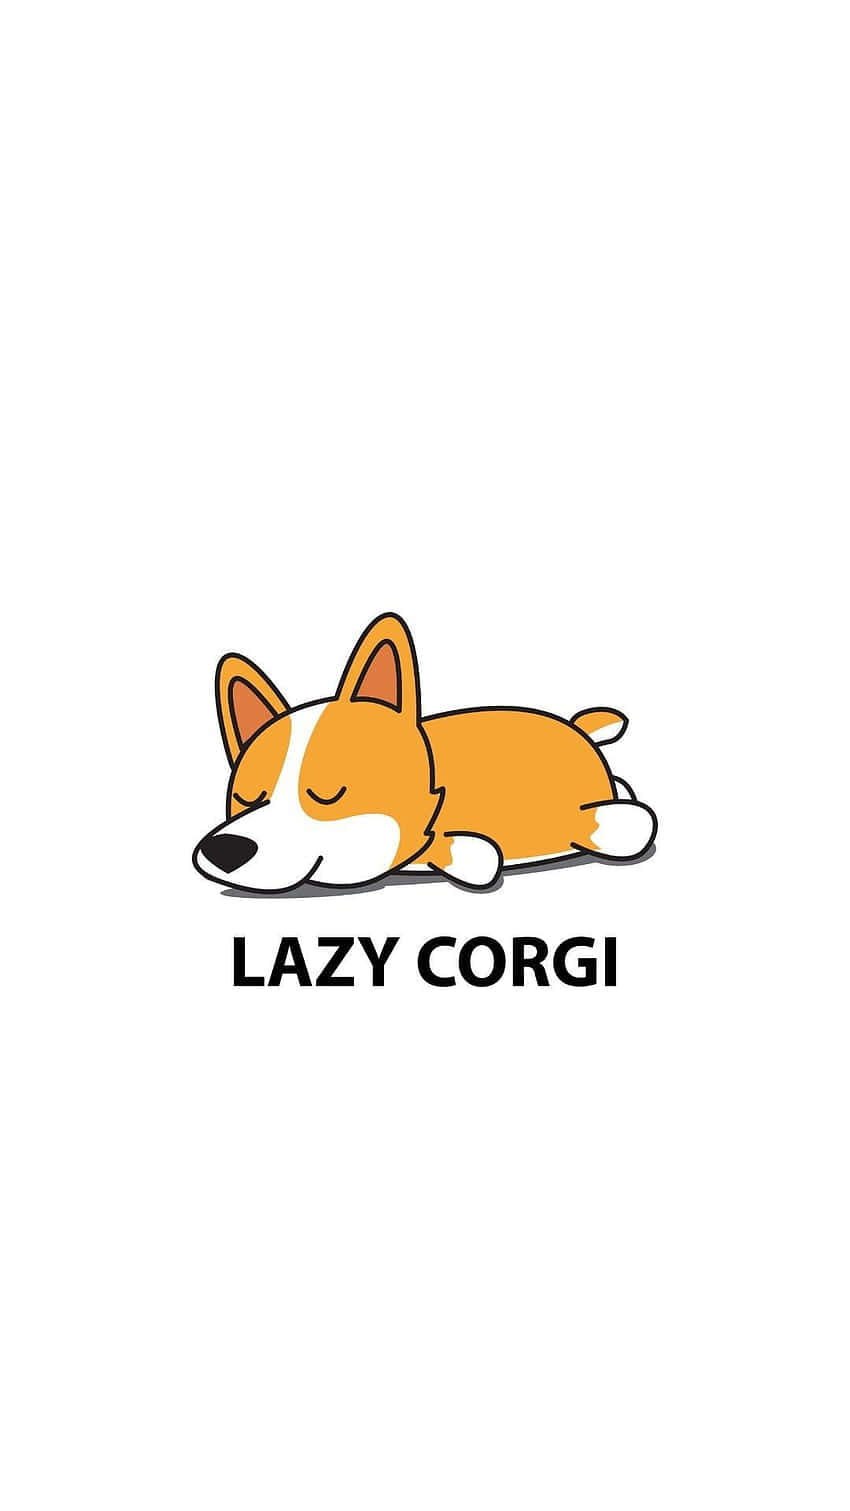 Cute Lazy Corgi Cartoon